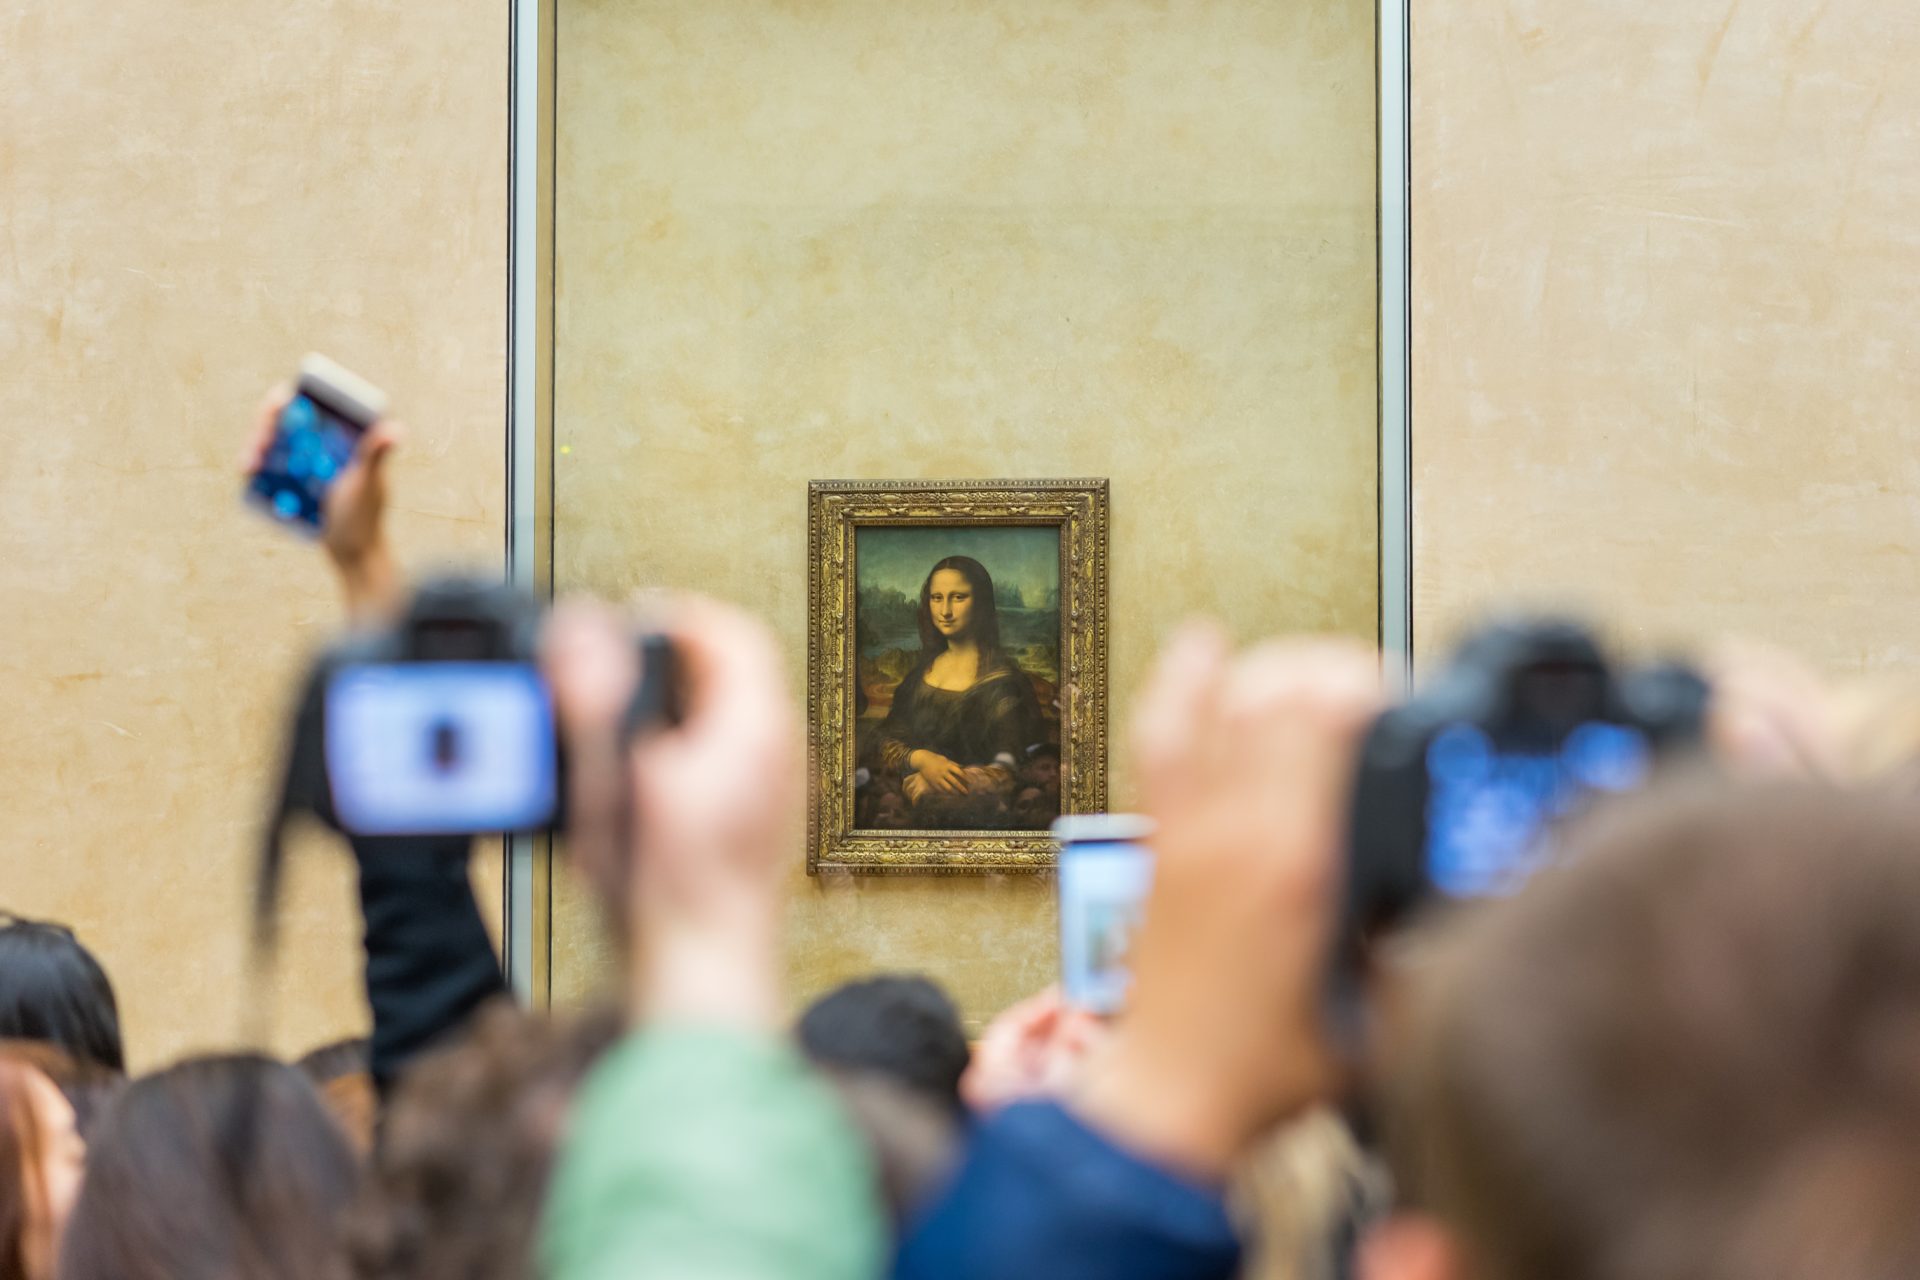 Ativistas atiram sopa contra quadro de Mona Lisa